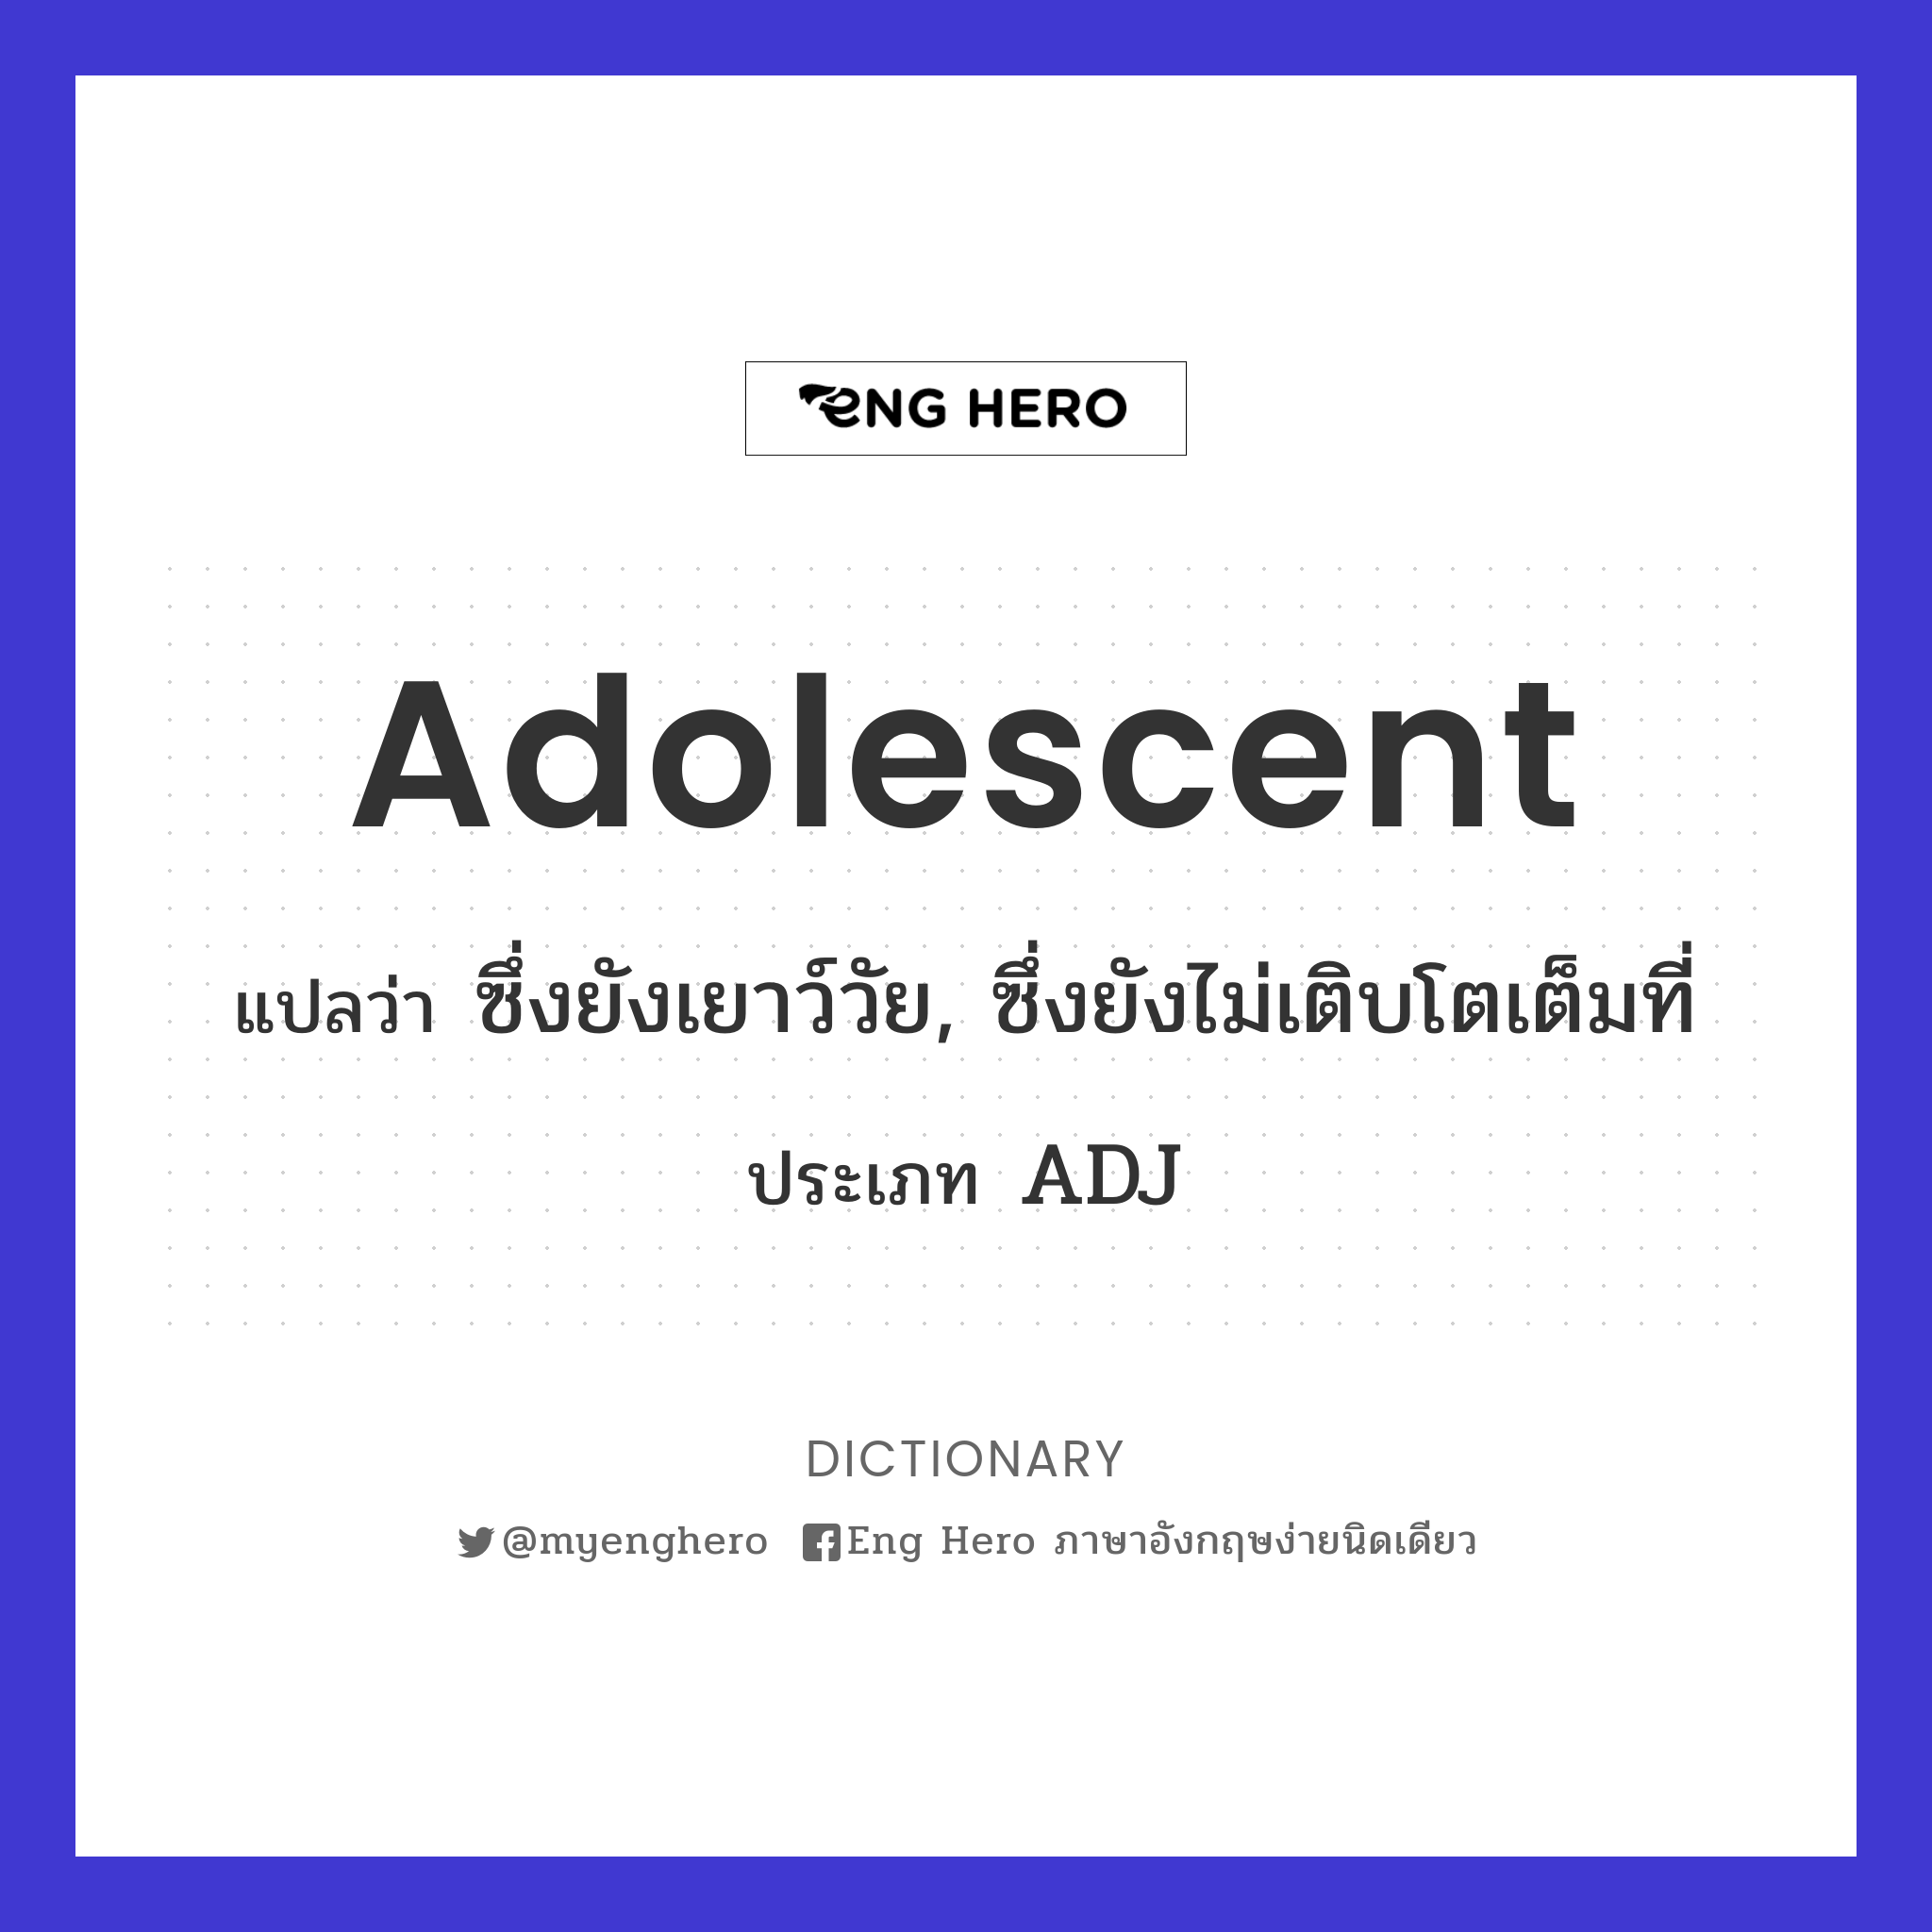 adolescent